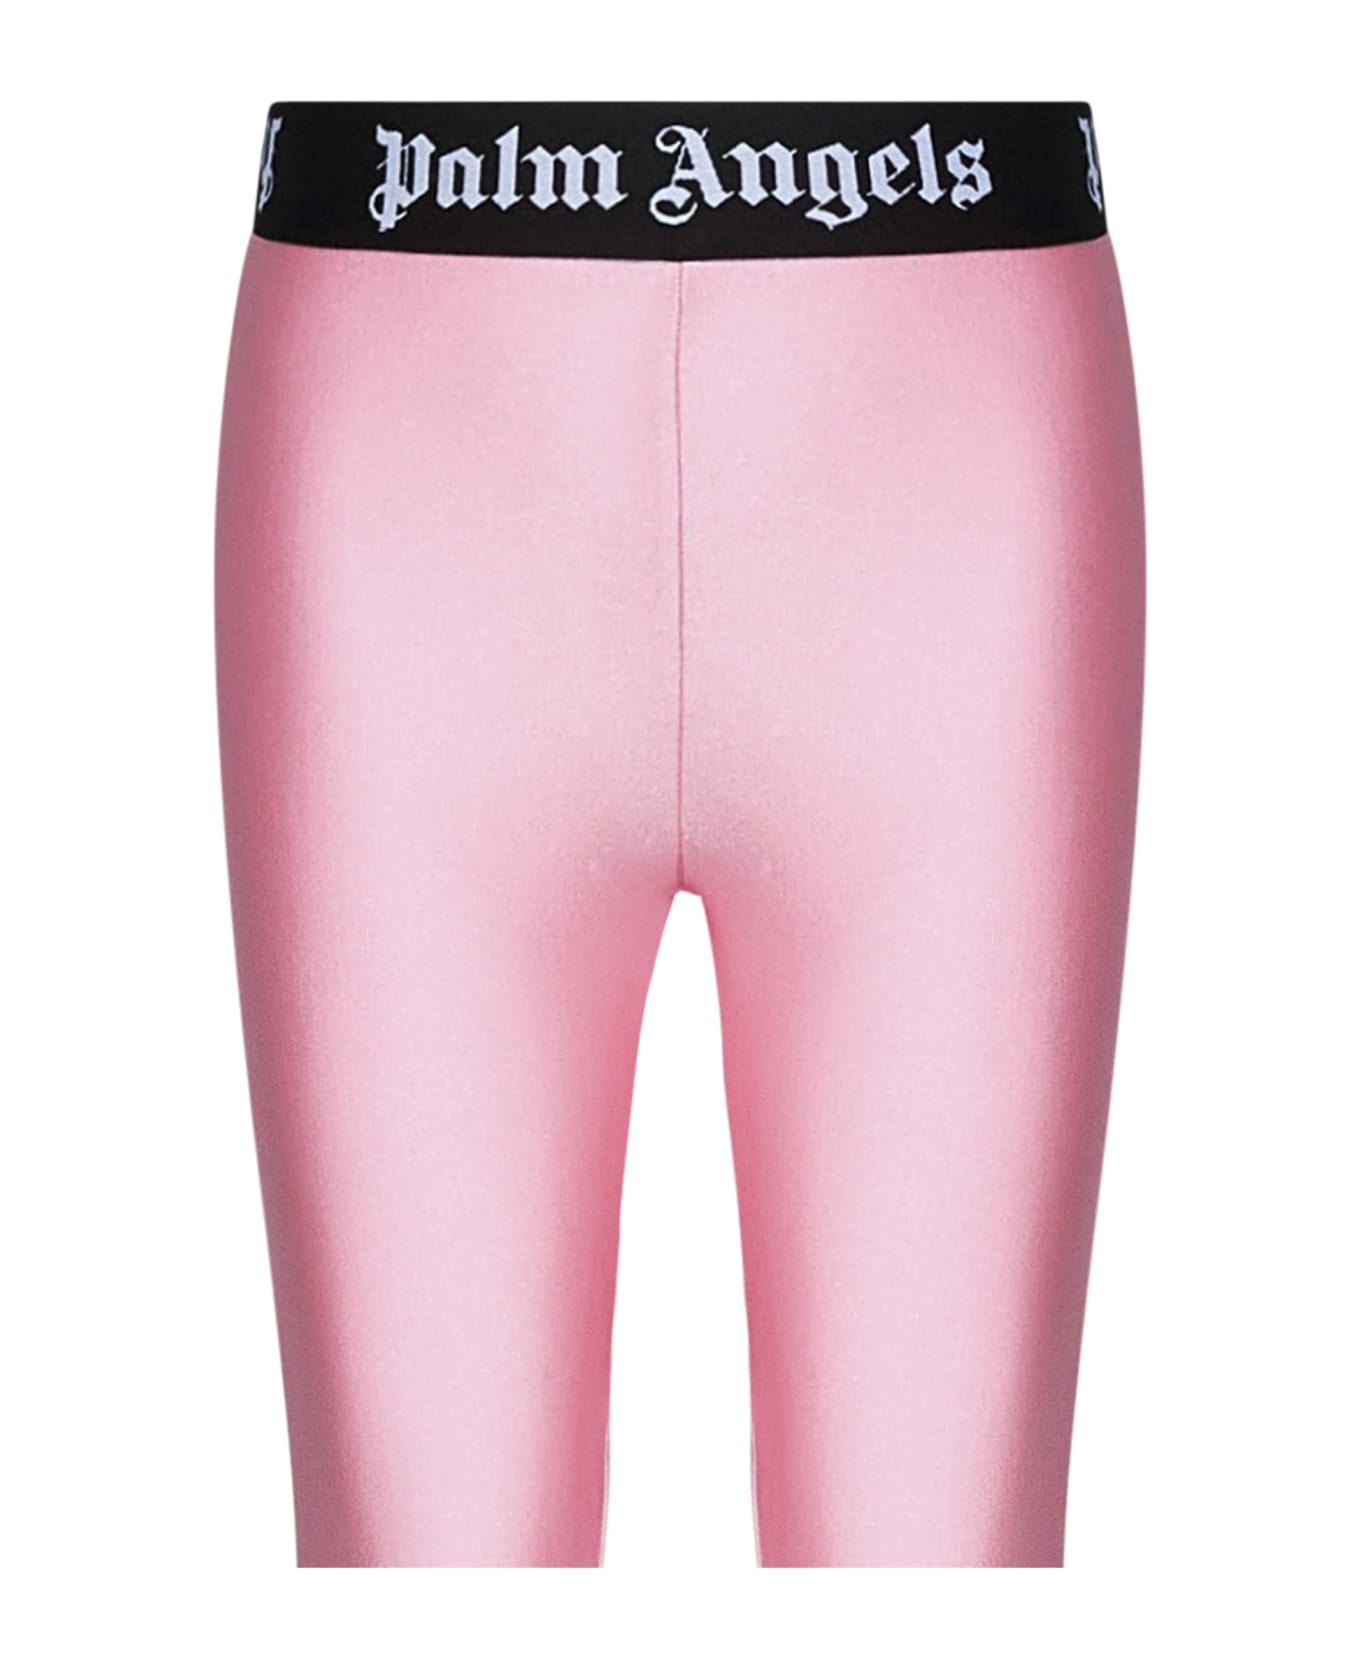 Palm Angels Kids Leggings - Pink